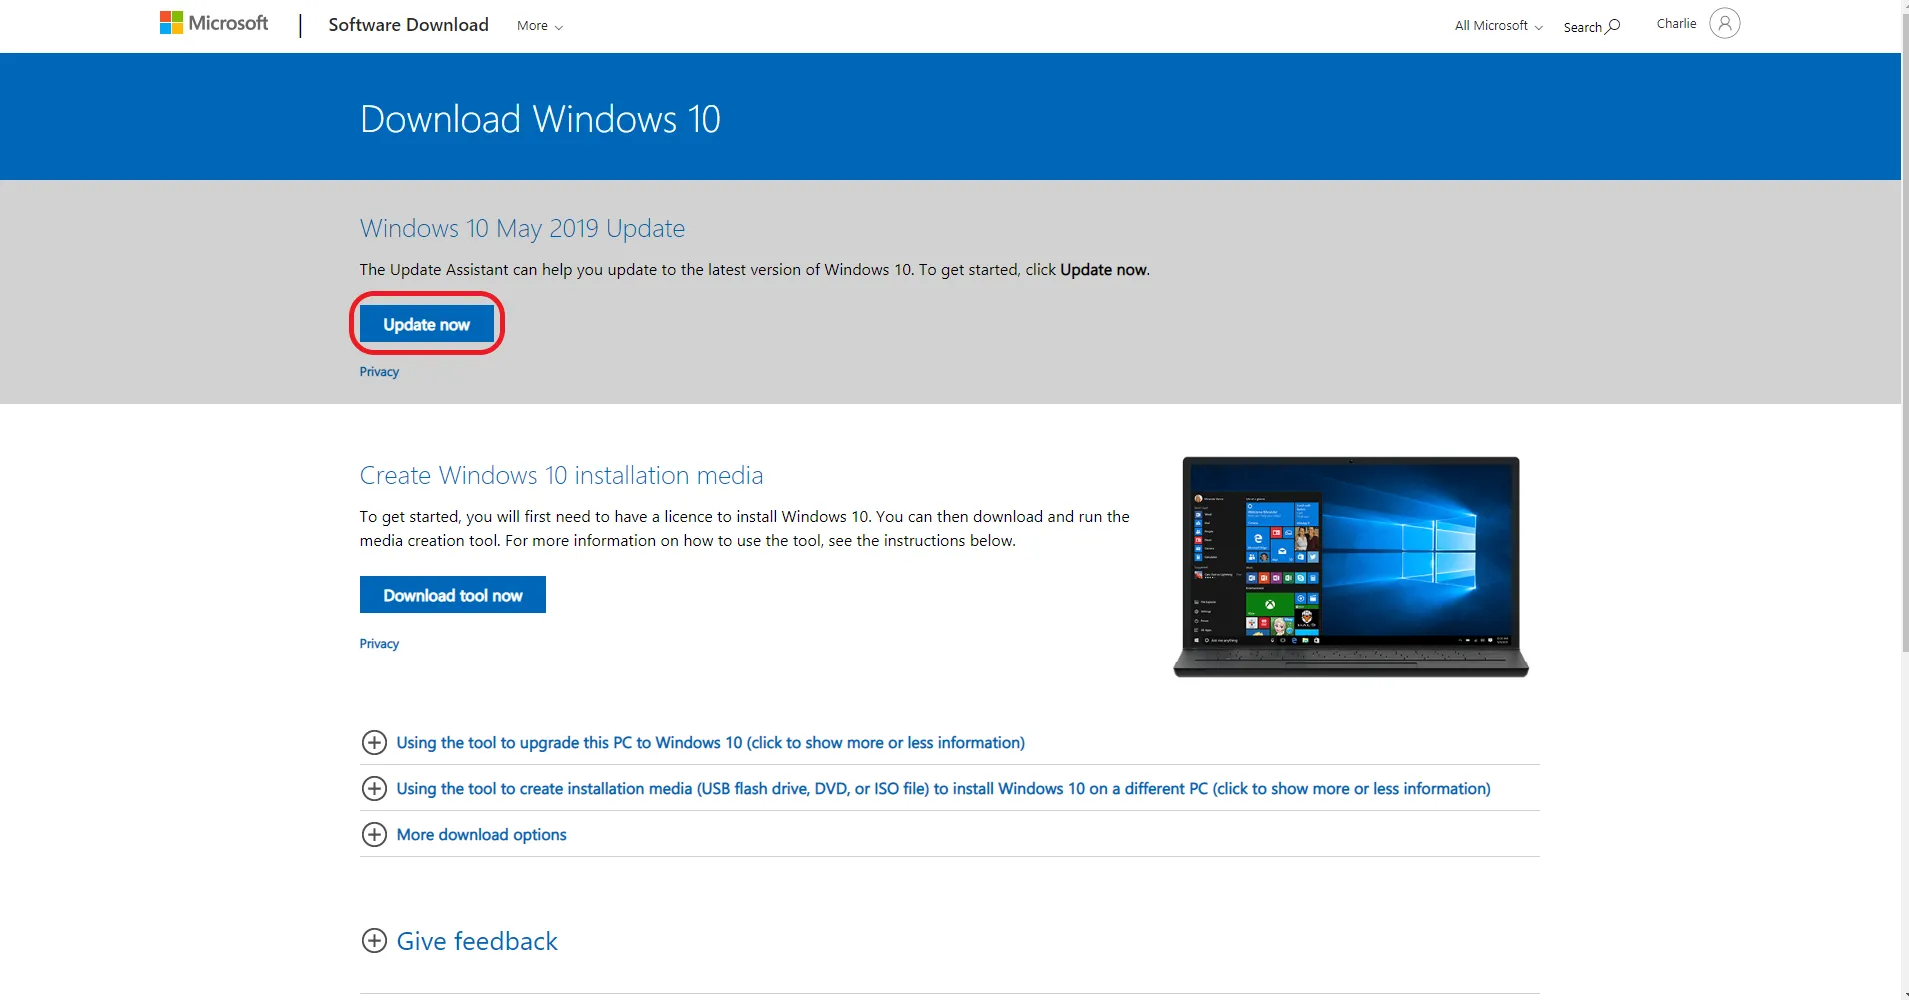 Windows 10 Update Assistant Error